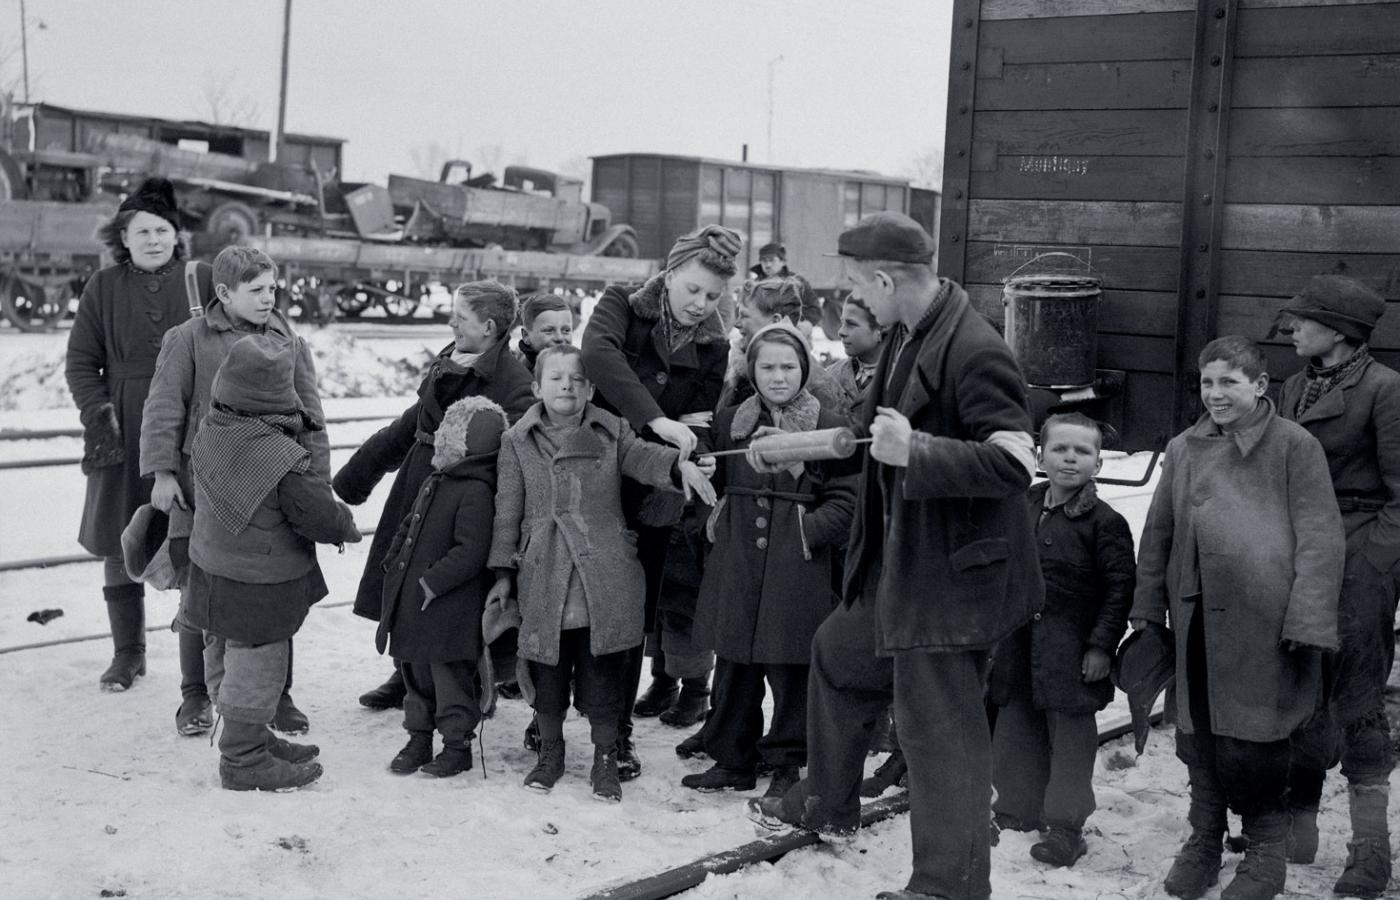 Odwszawianie przesiedleńców środkiem DDT z zasobów UNRRA w Katowicach, luty 1946 r.